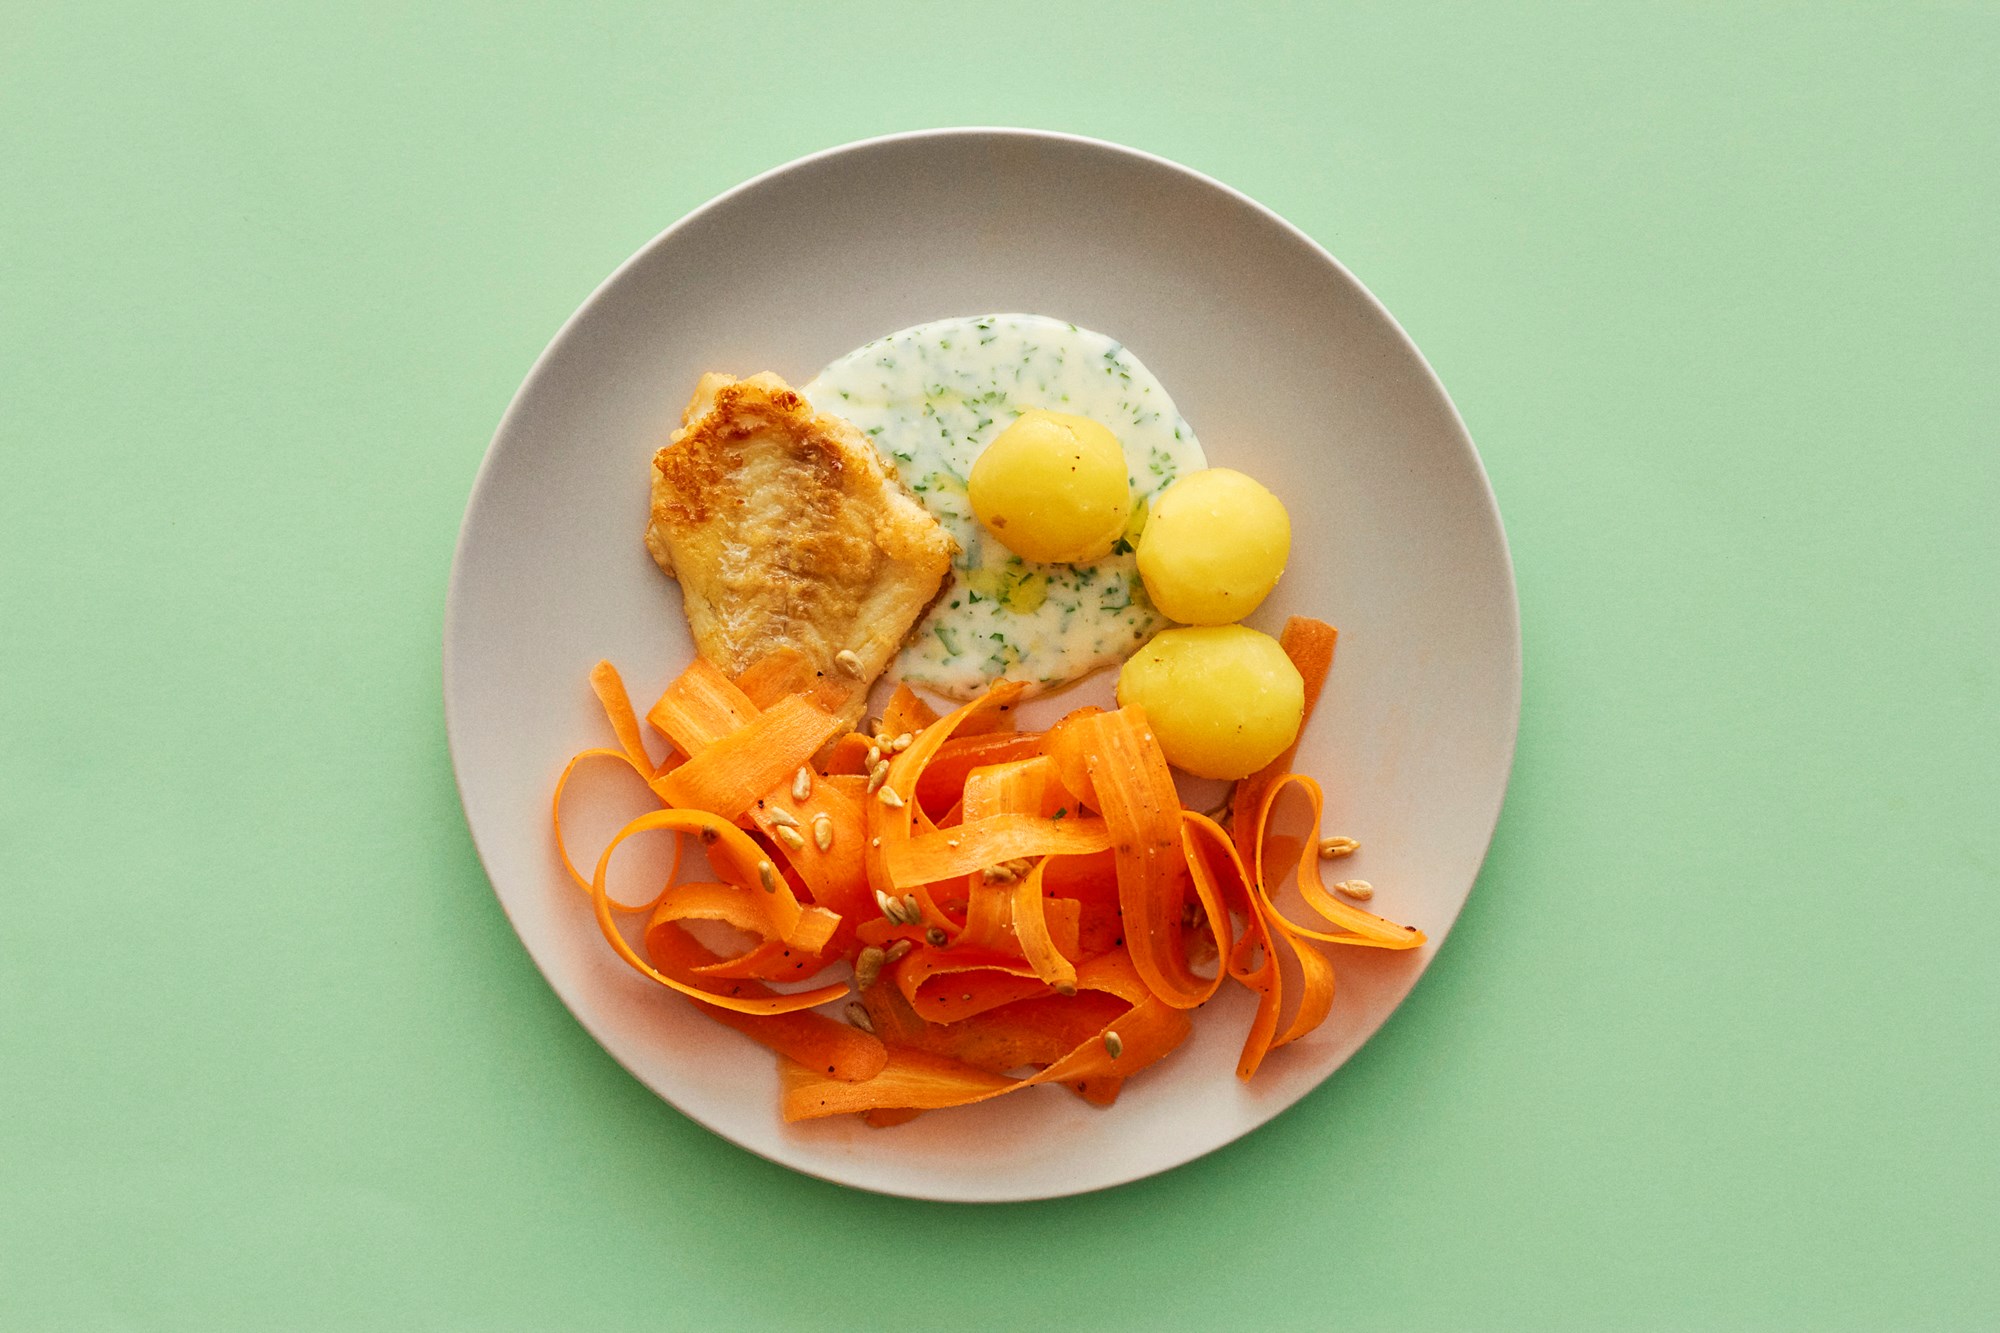 Meunierestegt rødspætte med kartofler, persillesovs og frisk gulerodssalat